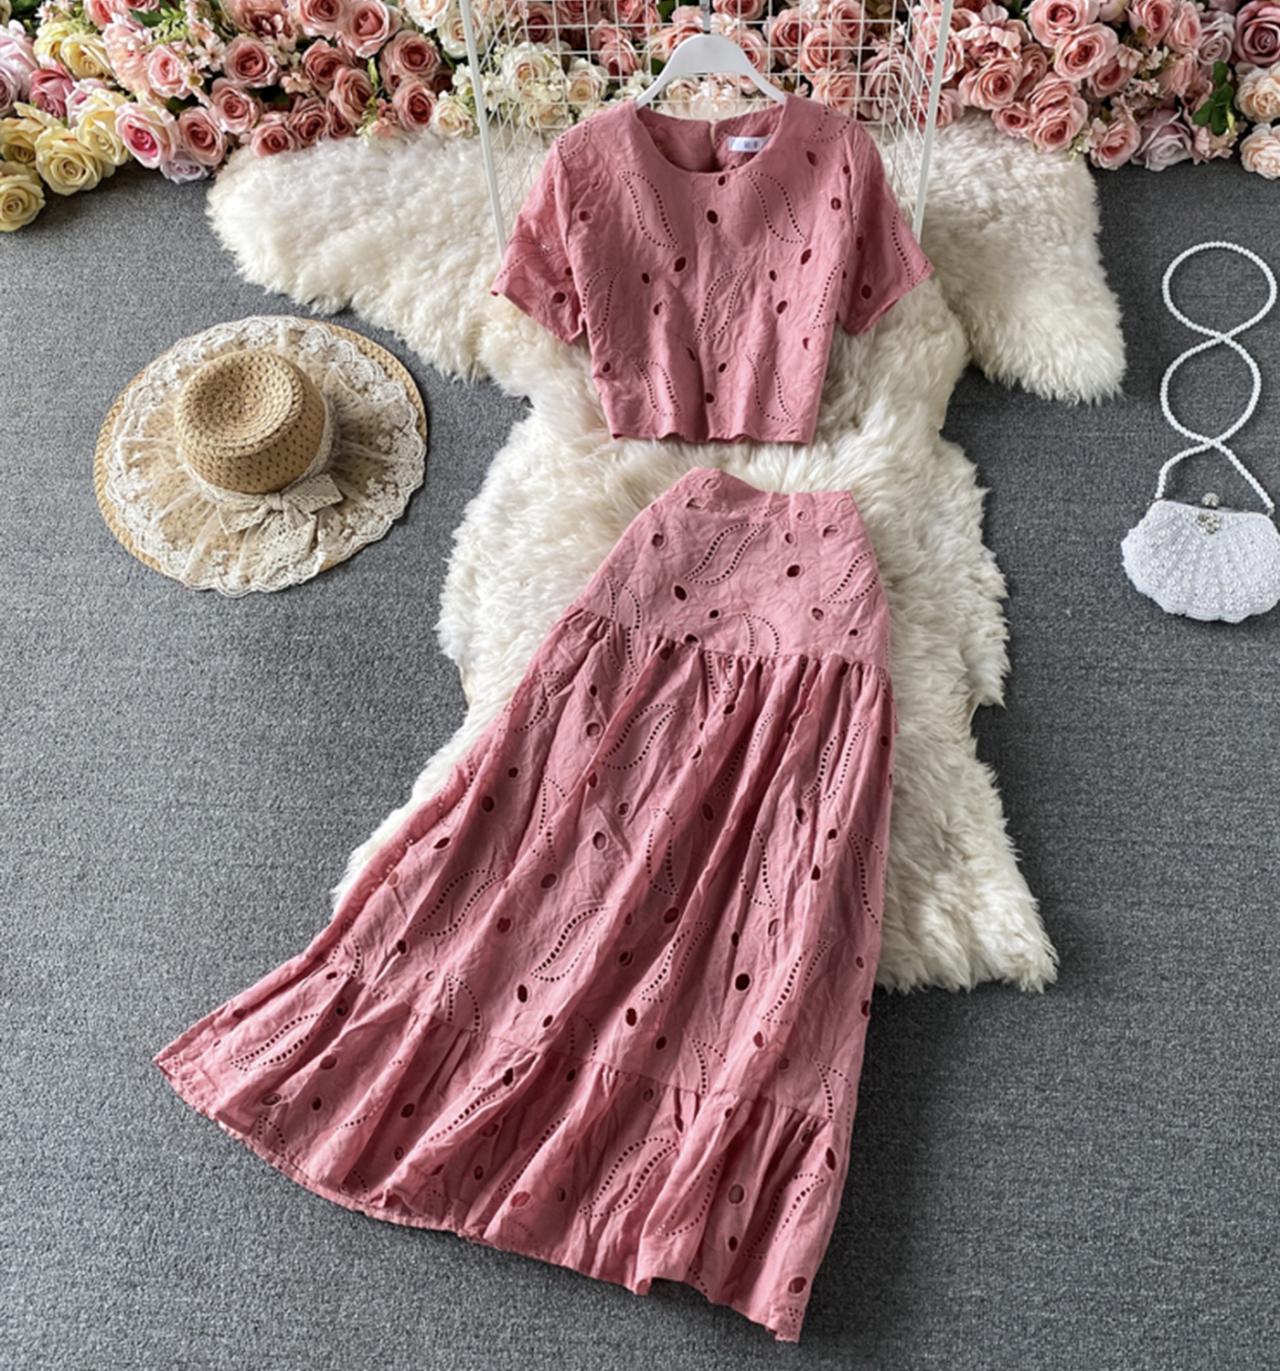 Süßes Kleid in A-Linie, zweiteiliges Kleid 705